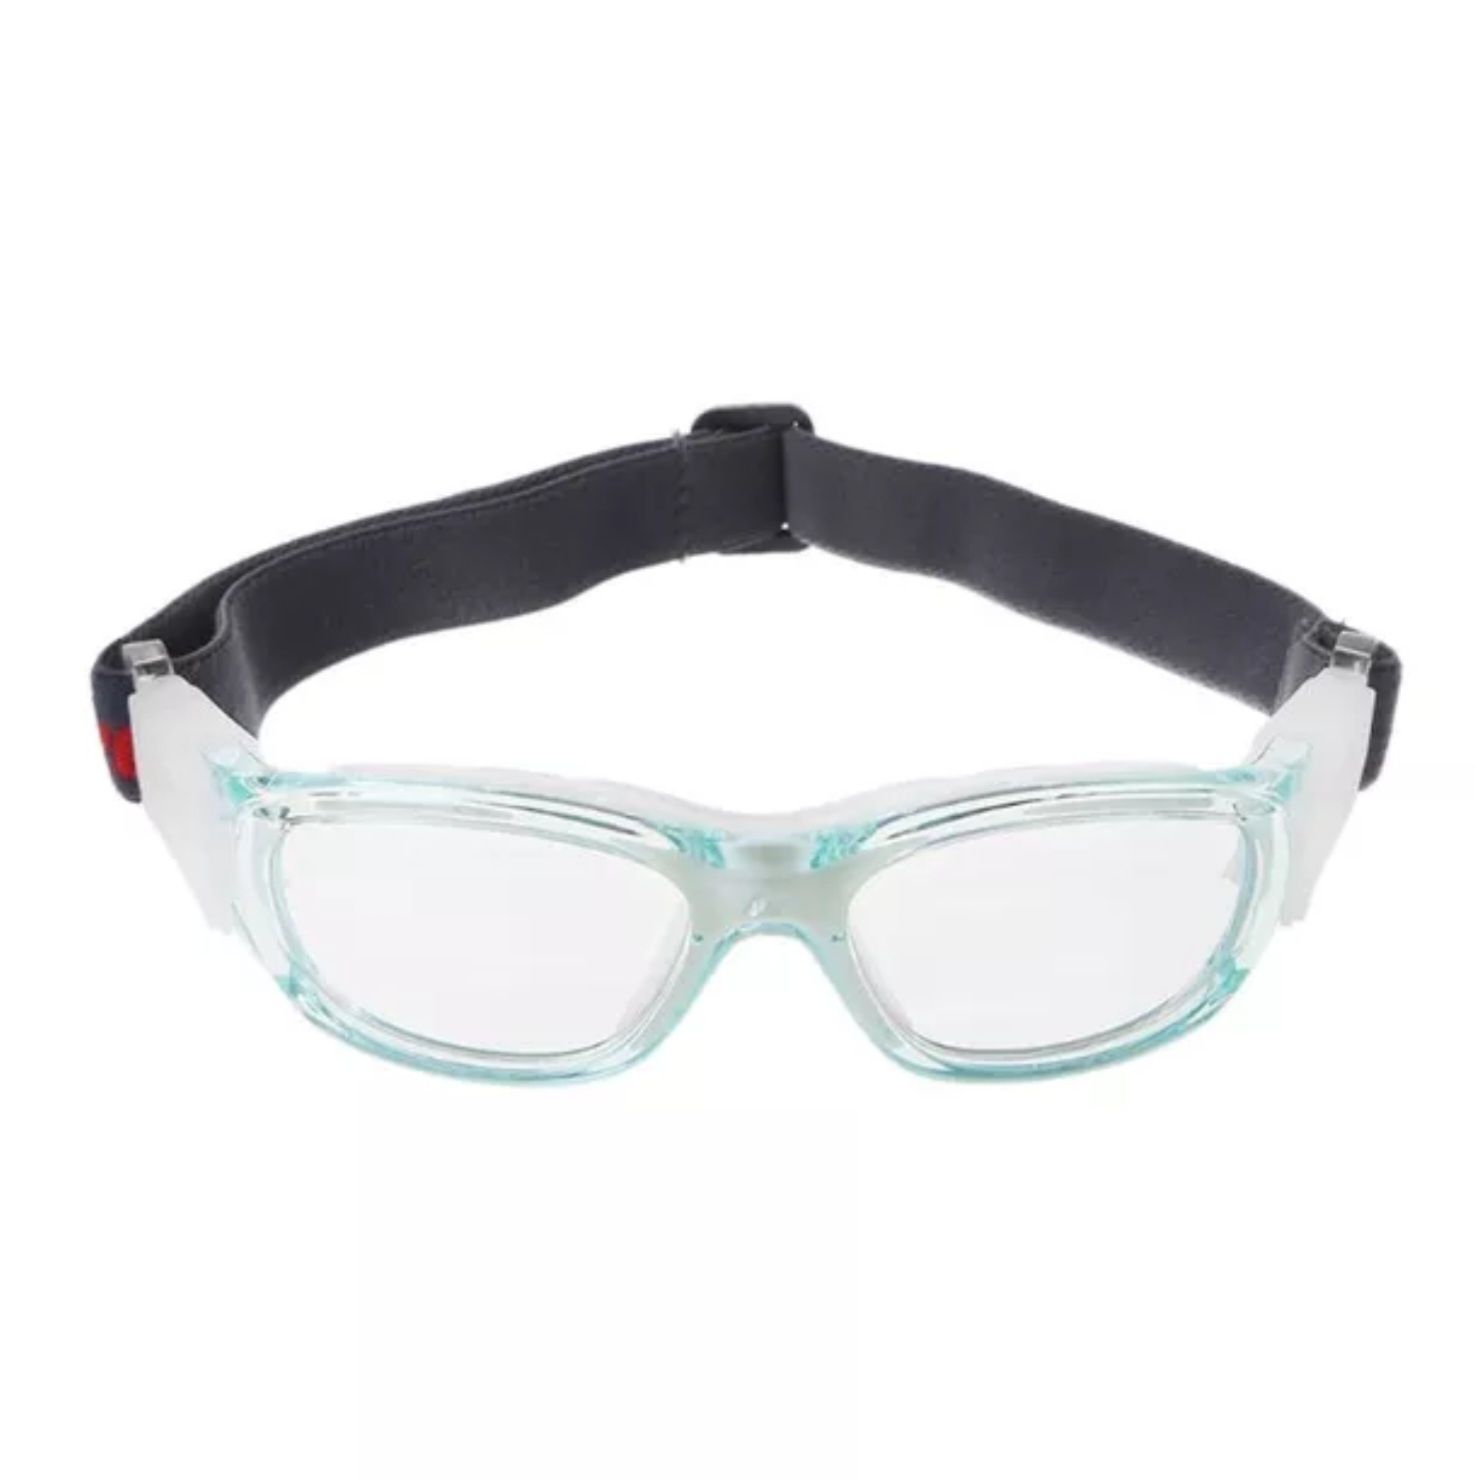 Продавам рамки за очила предназначени за спорт и интензивно движение!